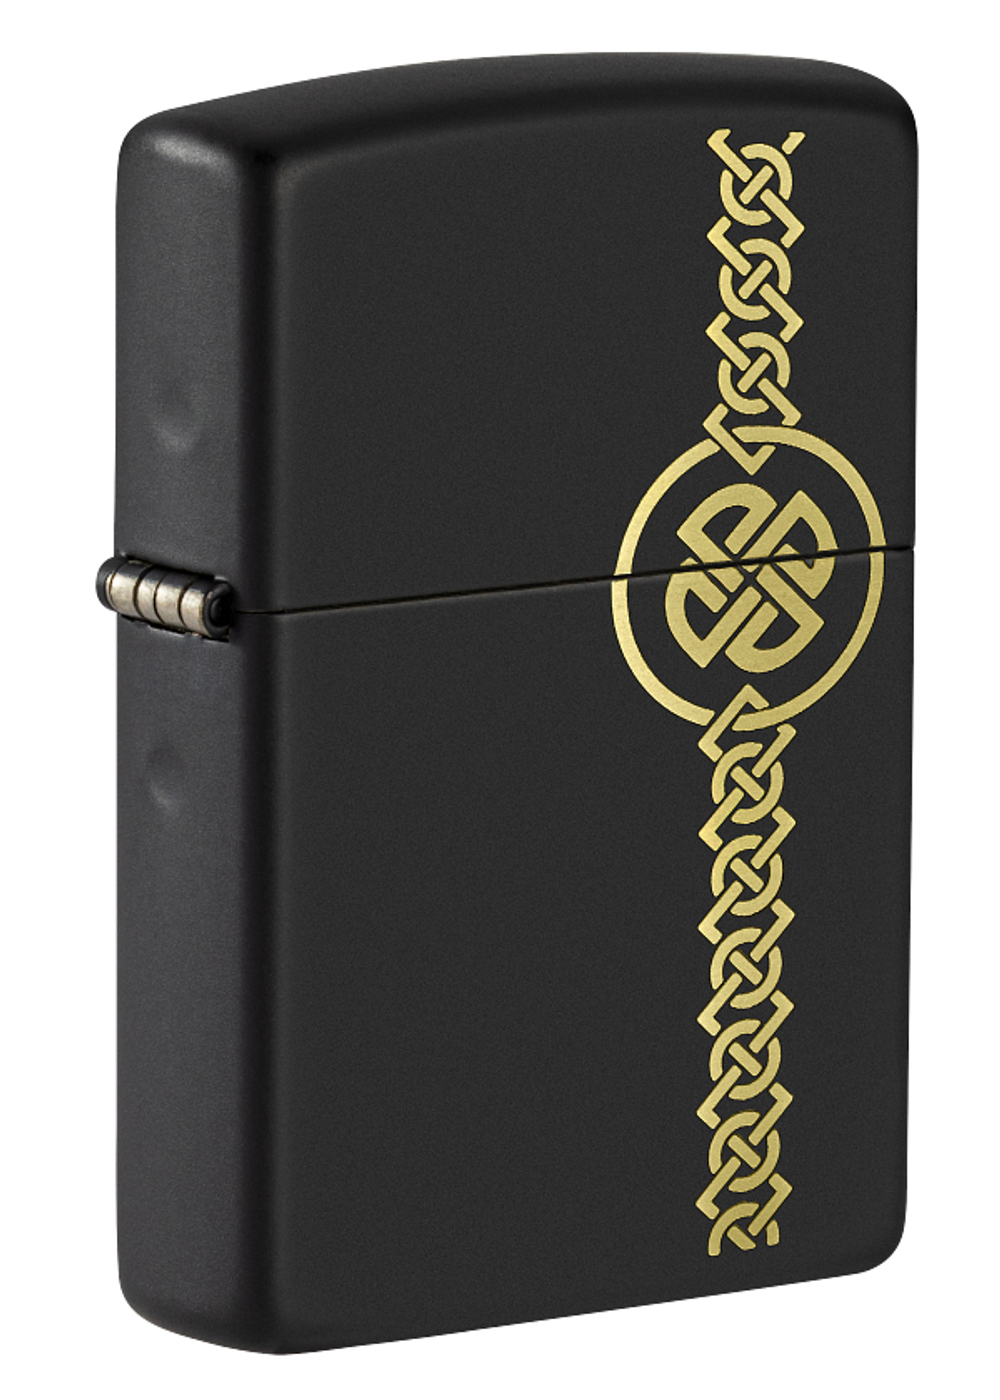 Легендарная классическая американская бензиновая широкая зажигалка ZIPPO Celtic Design 49518 в подарочной коробке